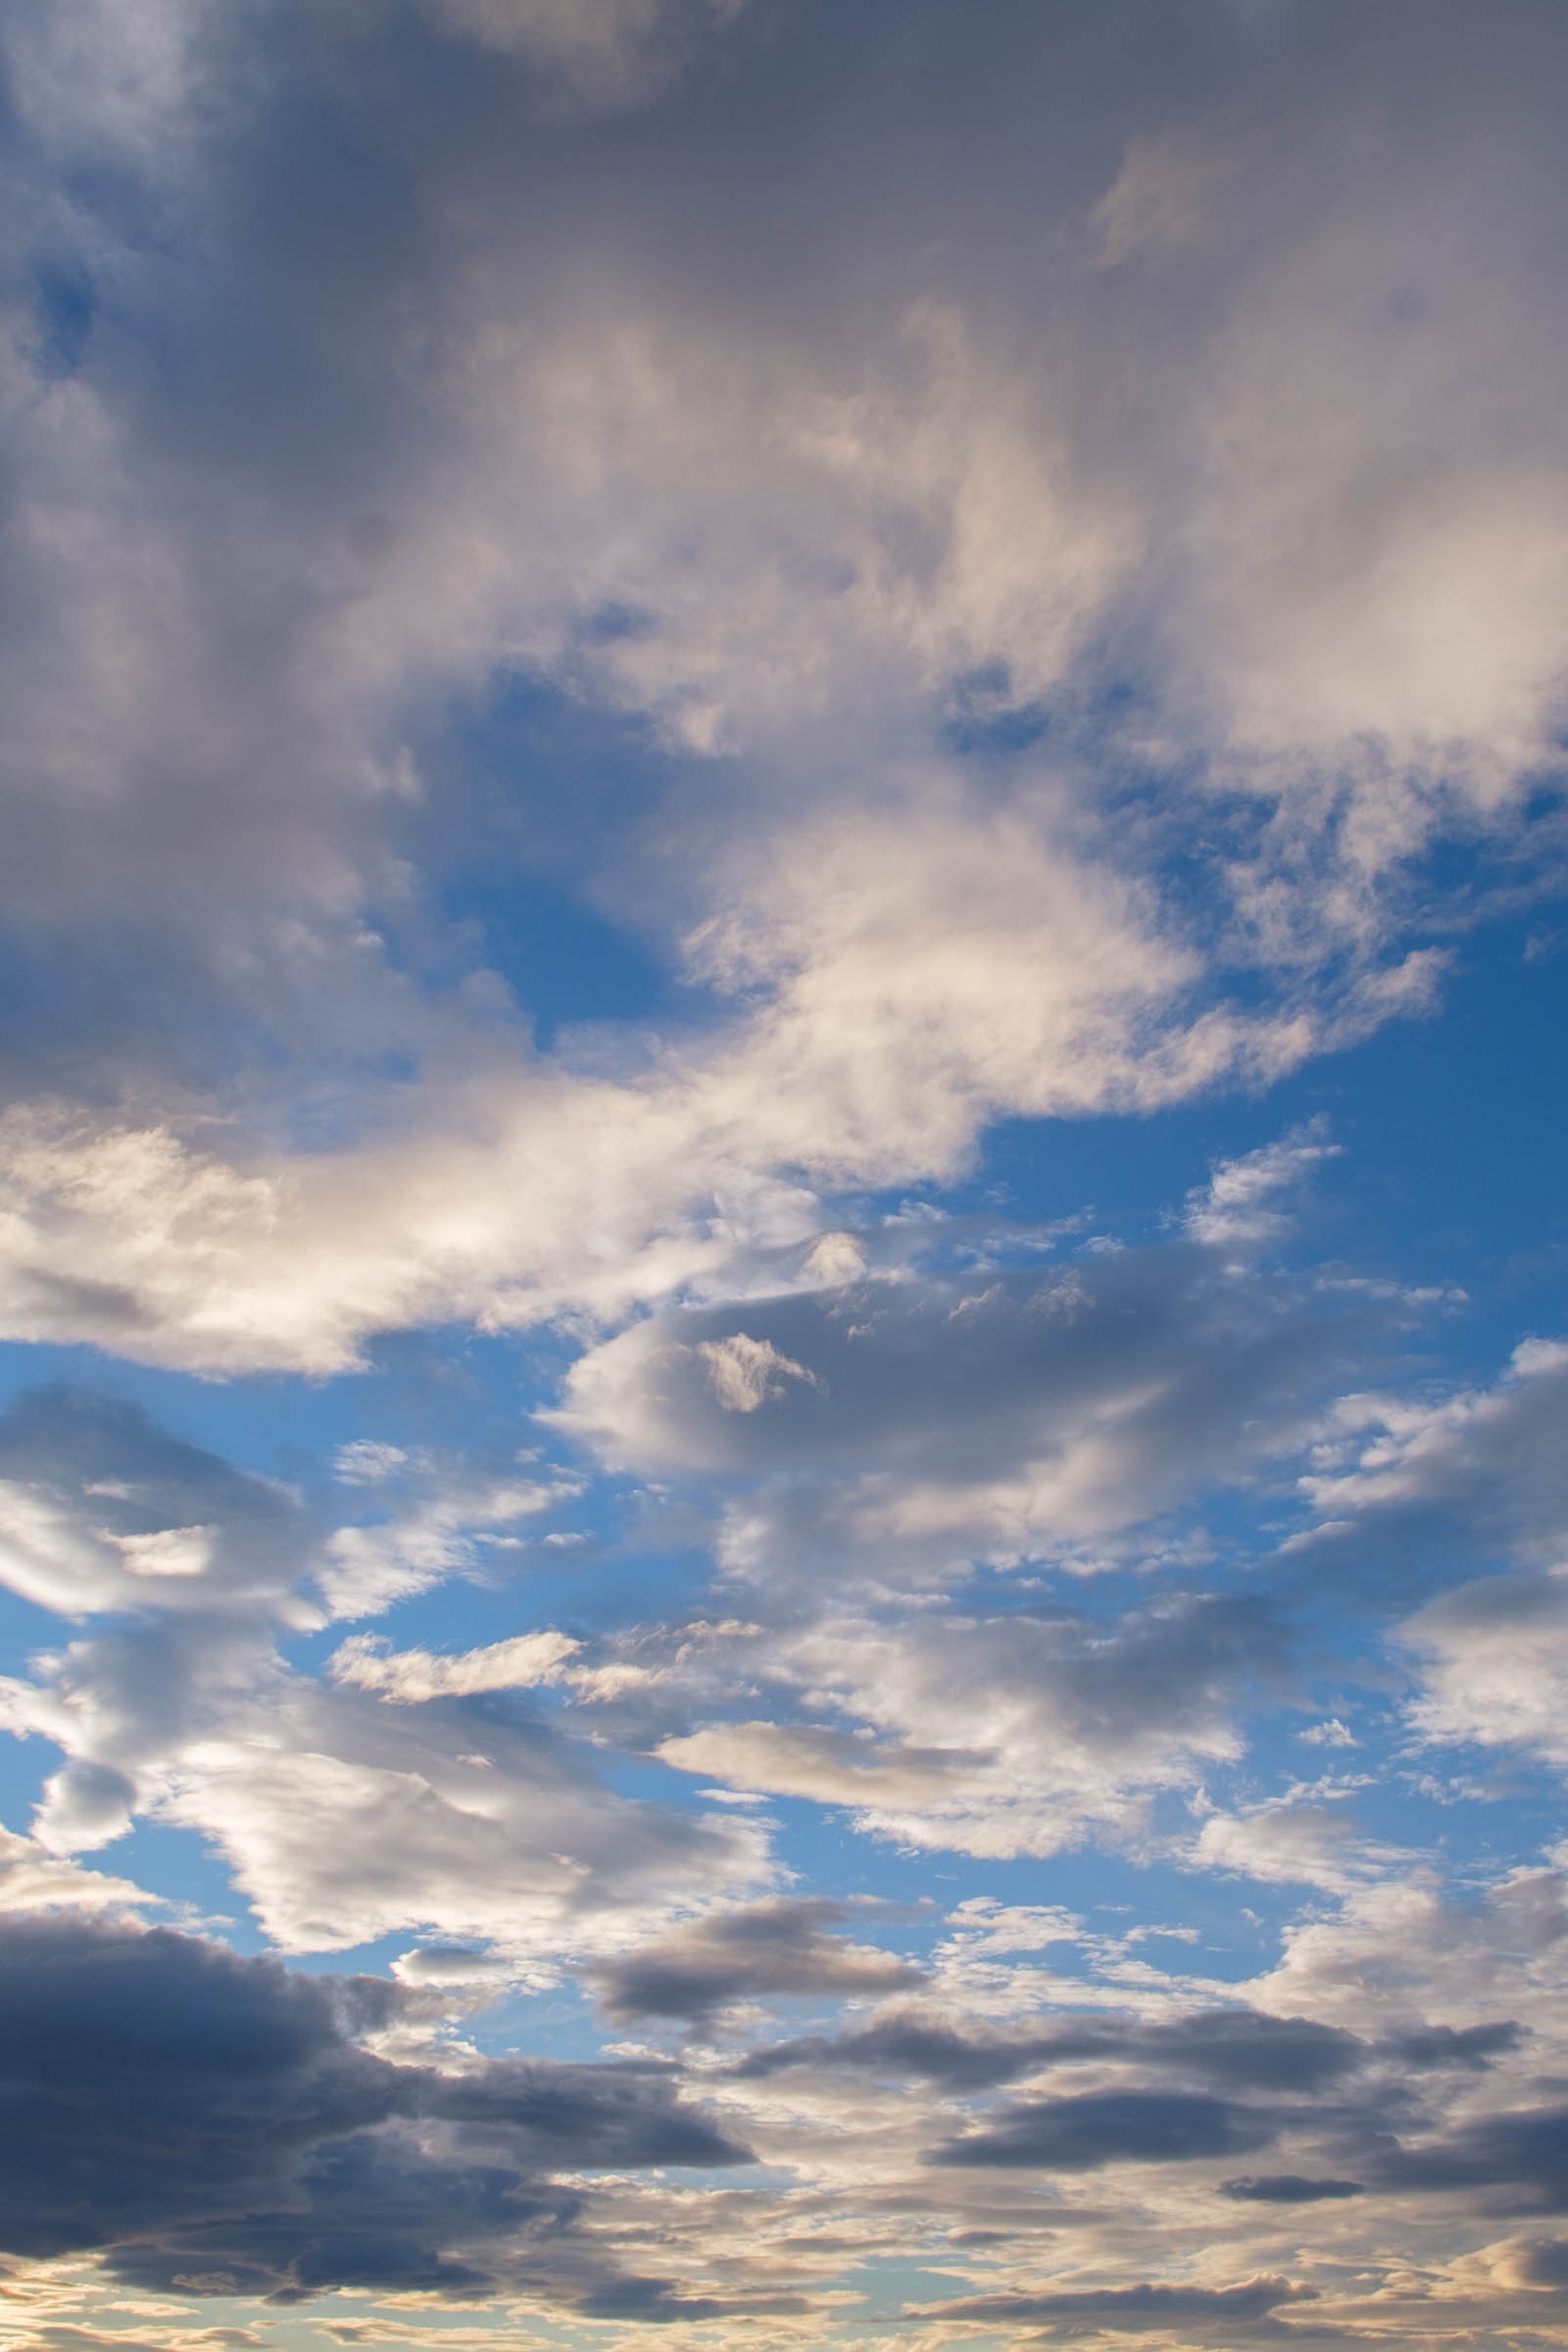 美しい雲が広がる青空 縦位置 のフリー写真素材 イメージガレージ